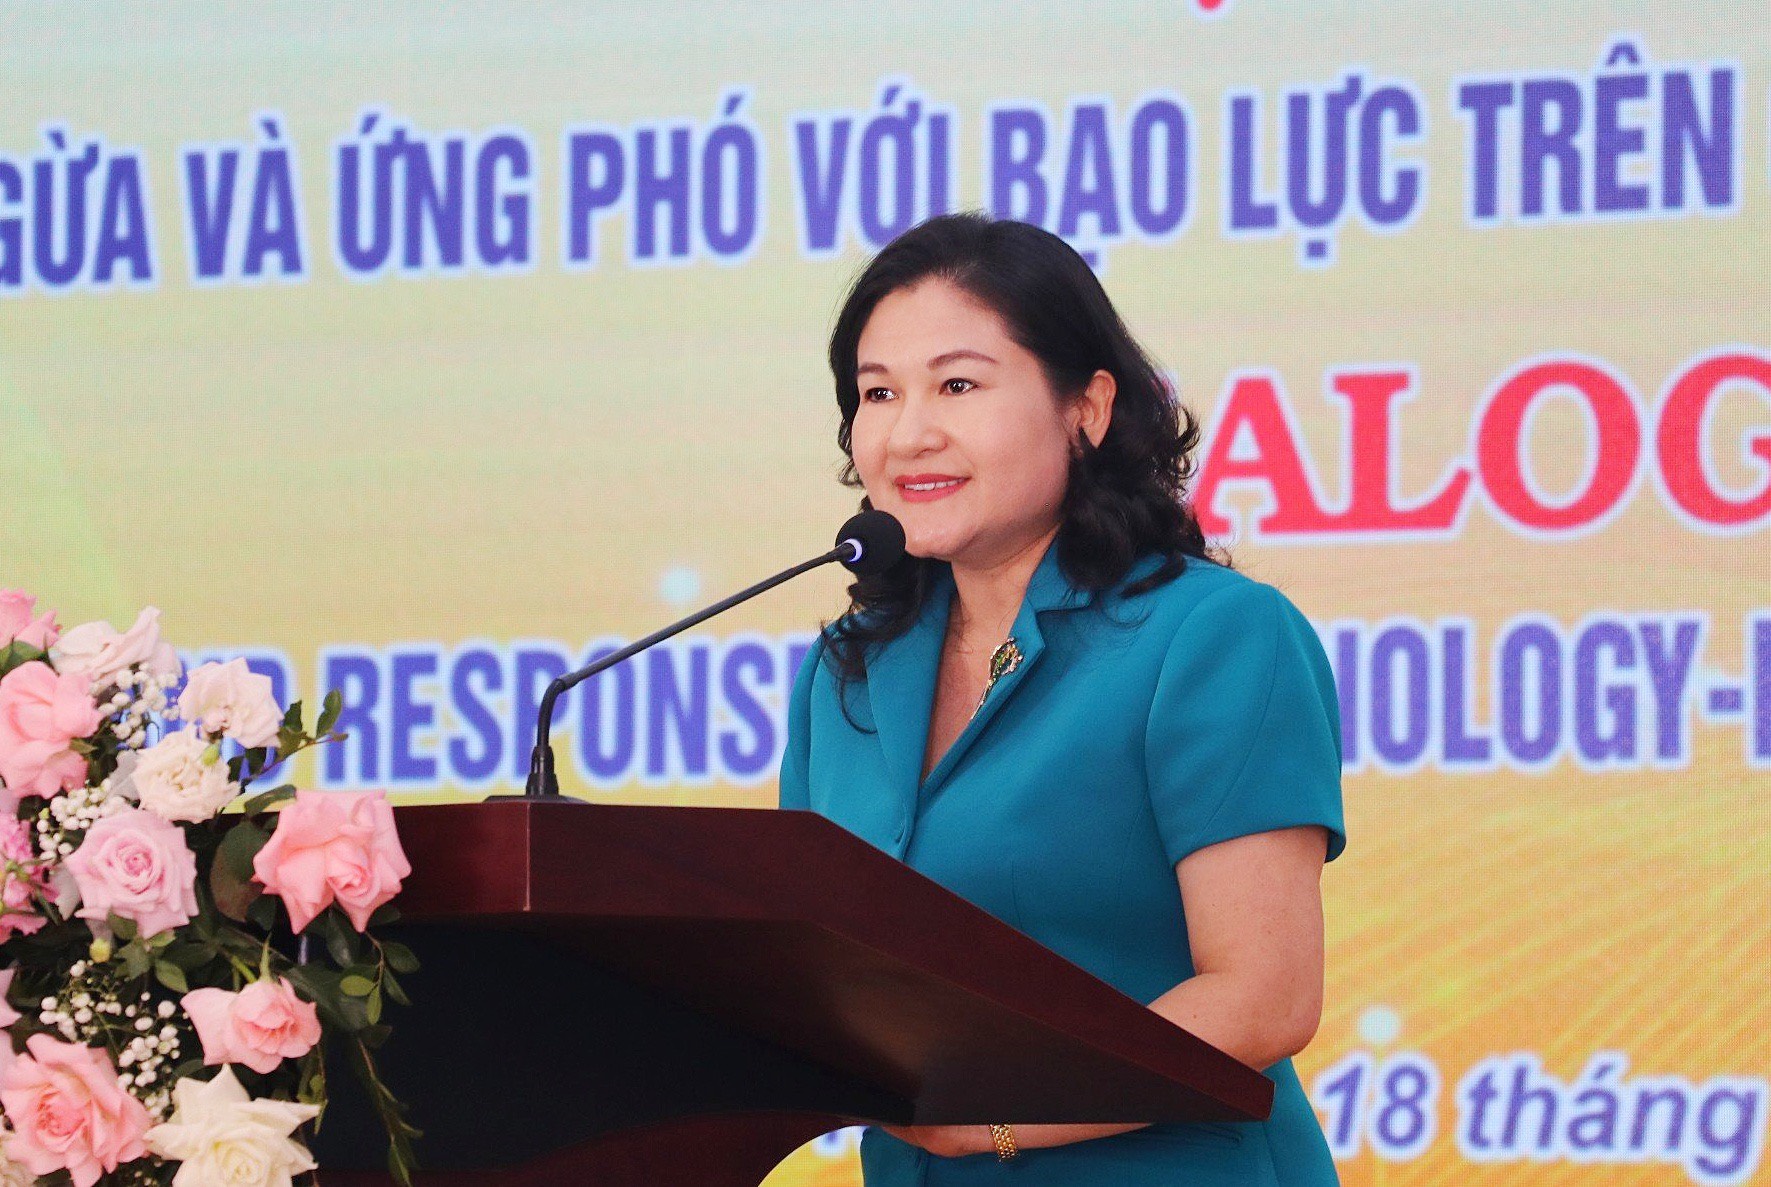 Sinh viên Việt Nam nói không với Bạo lực trên cơ sở giới đối với phụ nữ và trẻ em gái trên không gian mạng -0